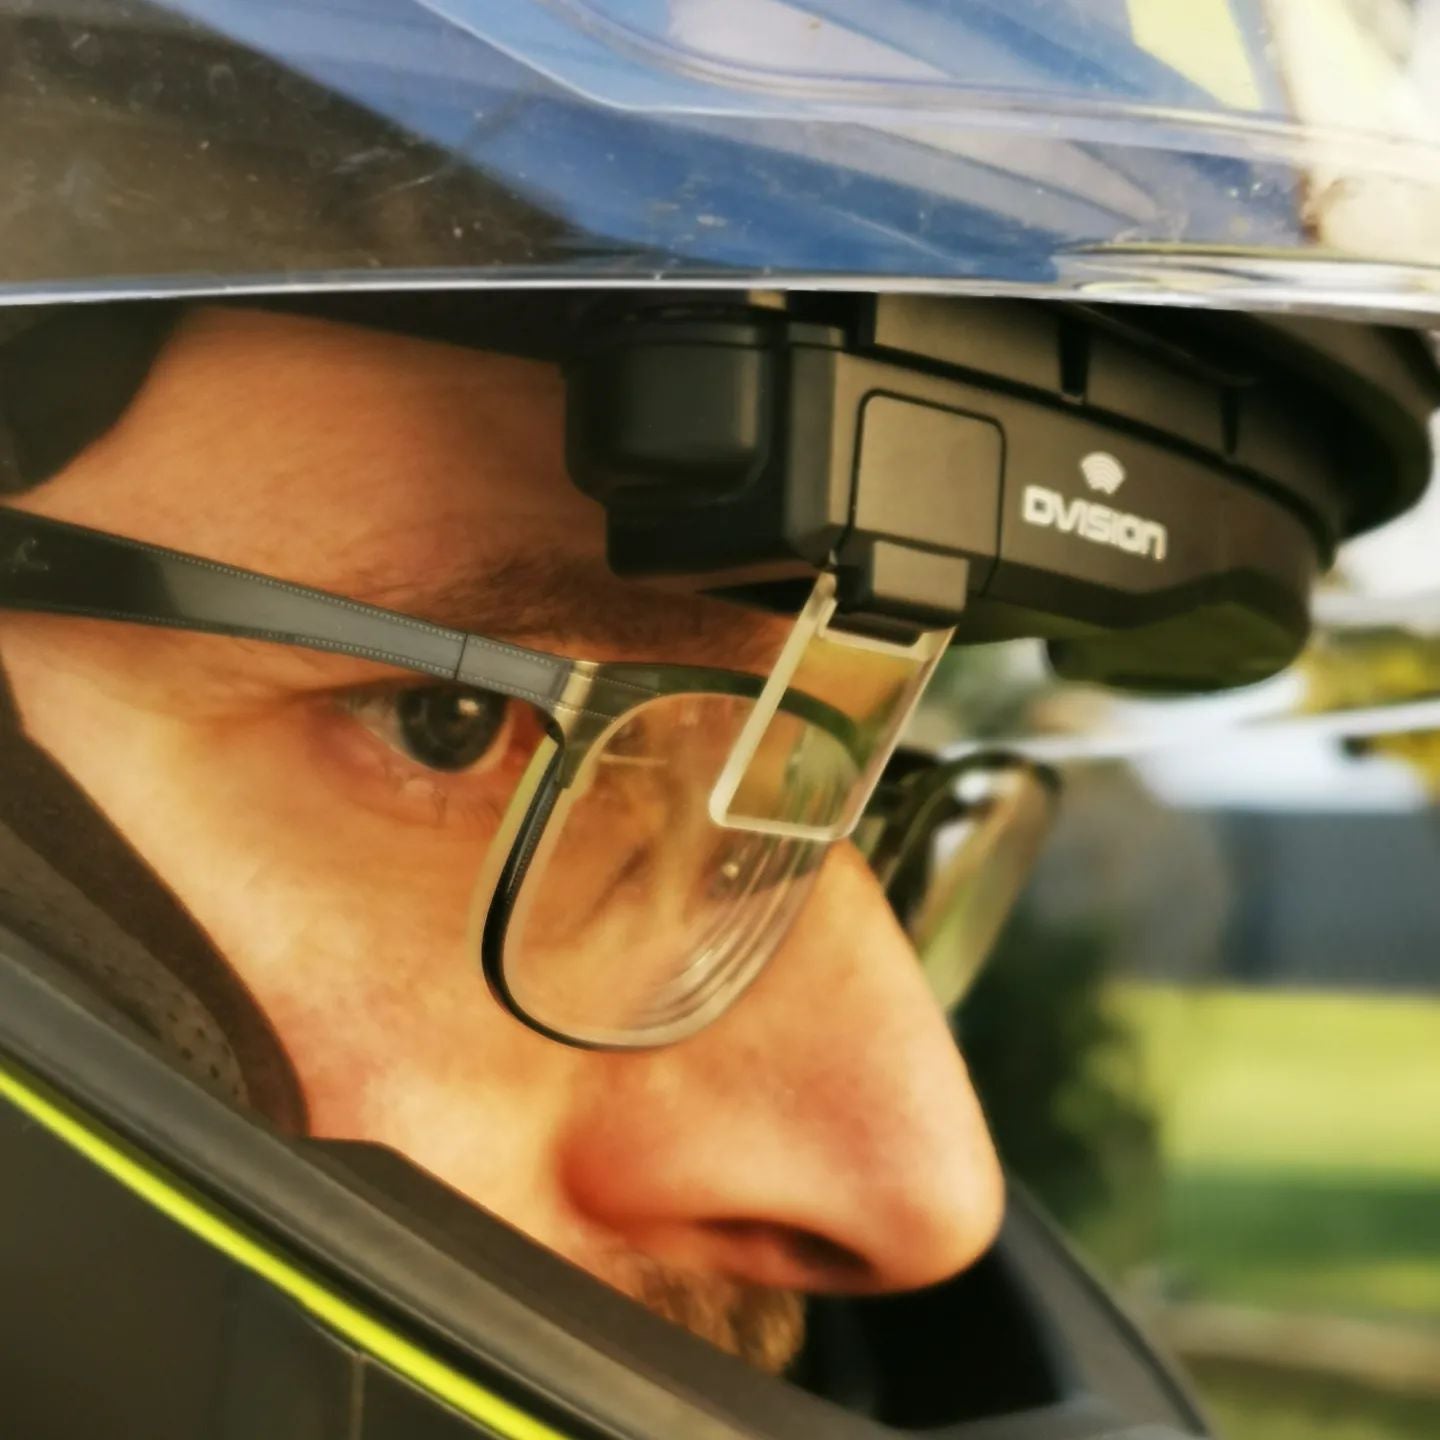 Motorradfahrer, welche auch Brillenträger sind werden durch das Head Up Display nicht eingeschränkt und können das HUD ohne Probleme nutzen.